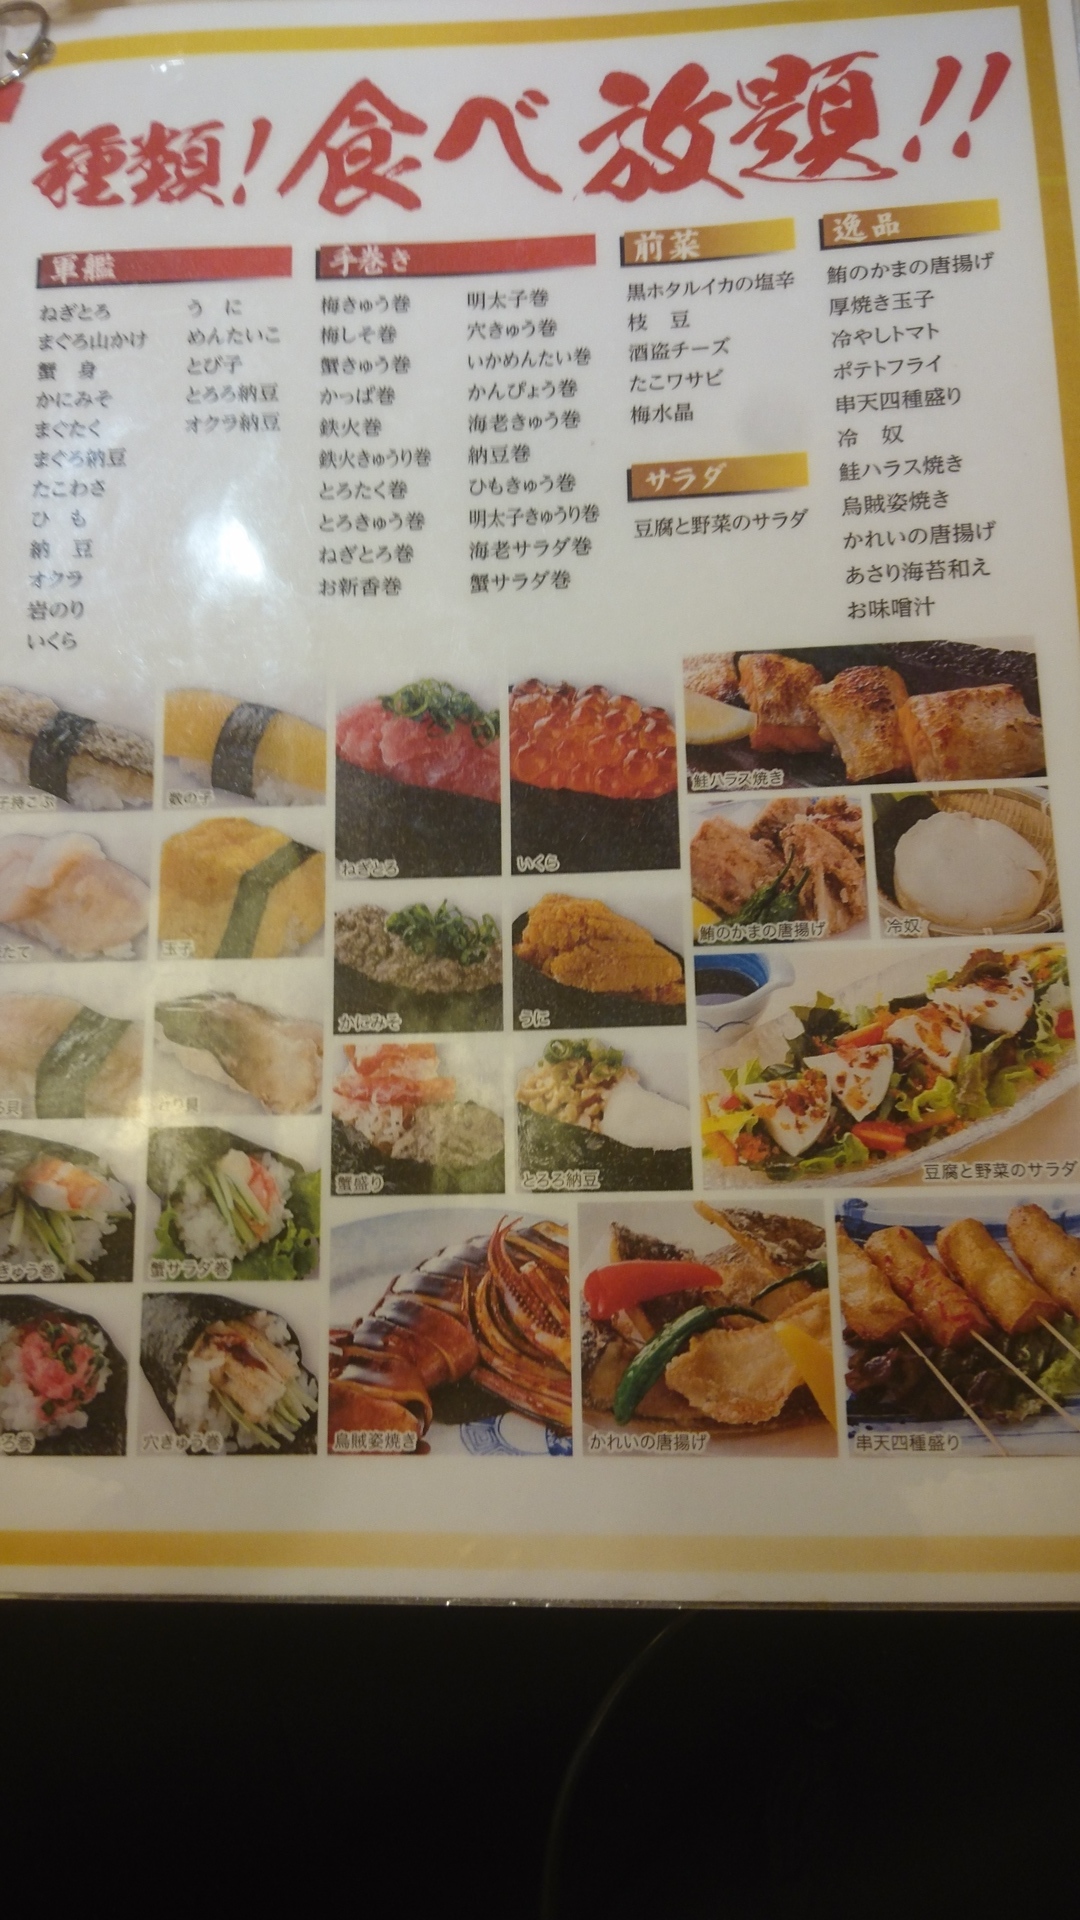 超絶美味い食べ放題寿司 きづなすし 新宿 大宮 横浜 にある 新鮮で旨い 池袋周辺の美味しいもの 池袋が10倍すきになるぜ Love Ikb